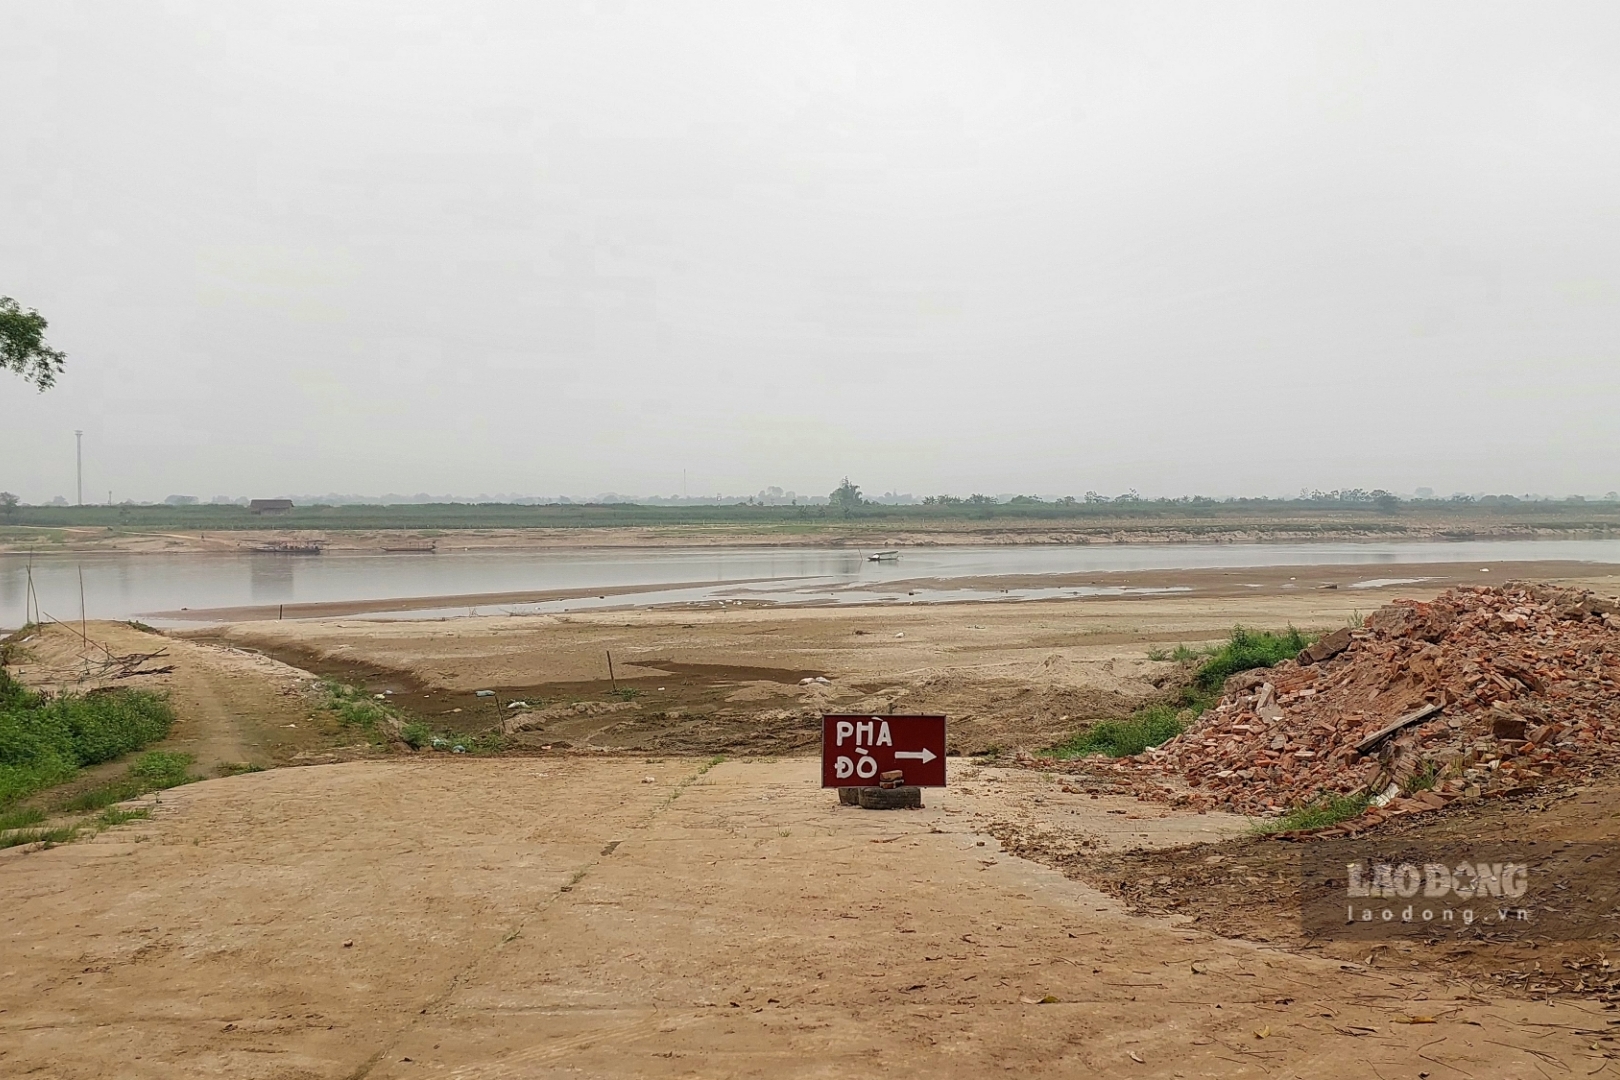 Tại bến đò tình Cương (đoạn qua xã Phú Lạc, huyện Cẩm Khê) 2 tháng trước đó nước cạn khô, trơ đến đáy sông lộ ra nhiều cồn cát...